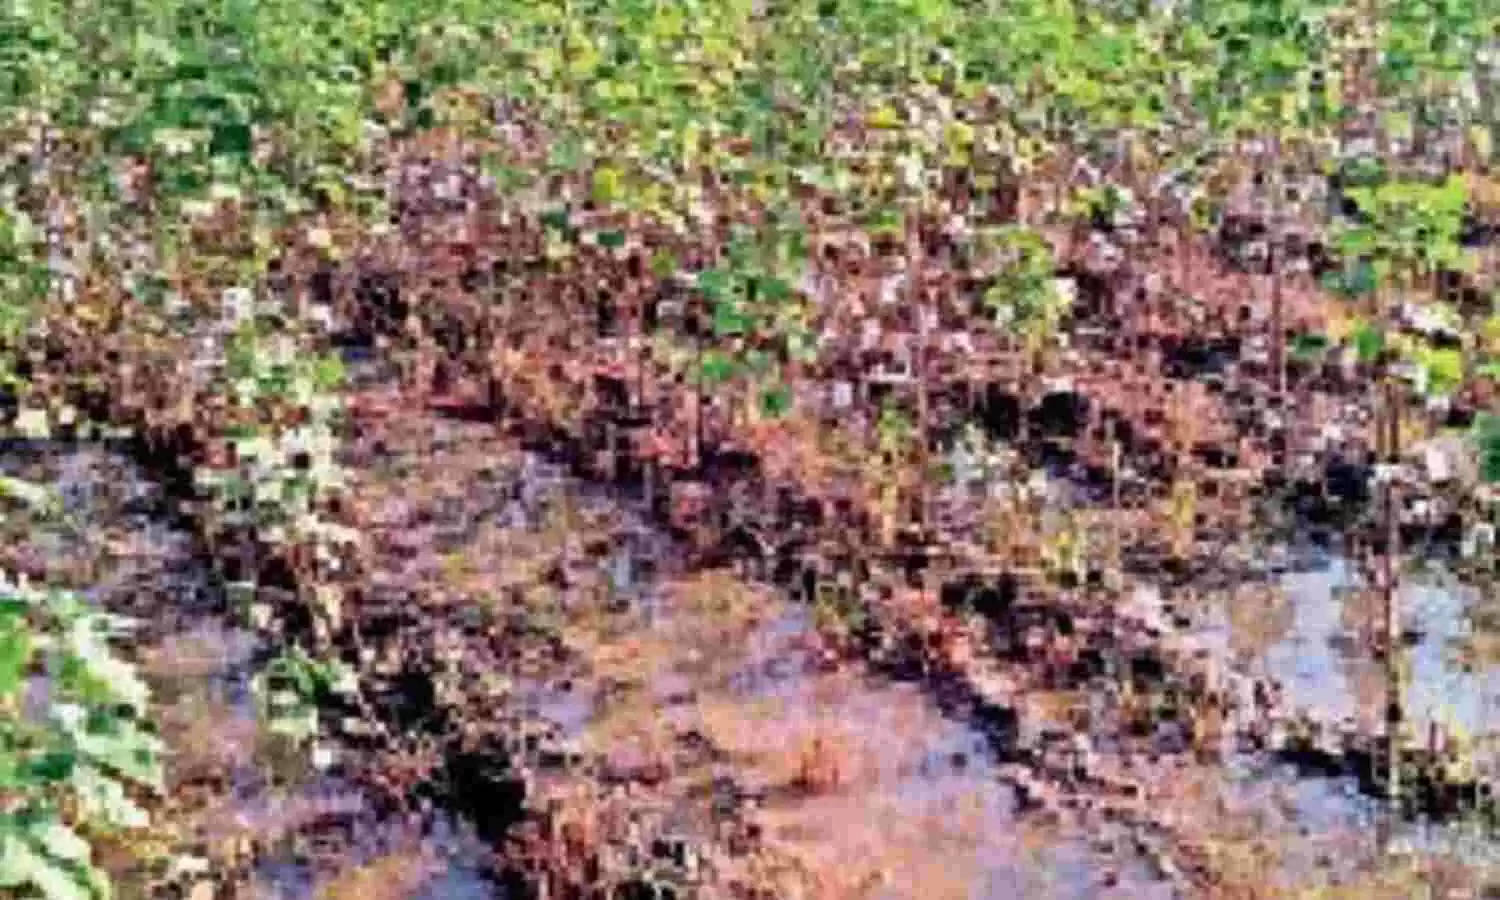 डिप्टी सीएम दुष्यंत चौटाला ने कुछ दिनों पहले अपने दौरे में सिंचाई विभाग के अधिकारियों को अधिक से अधिक पंप सेट लगाकर पानी नहरों में डालने के निर्देश दिए थे, परंतु अभी तक खेतों से पानी नहीं निकला। इस जलभराव के कारण कपास की फसलों को खासा नुकसान हुआ है।,